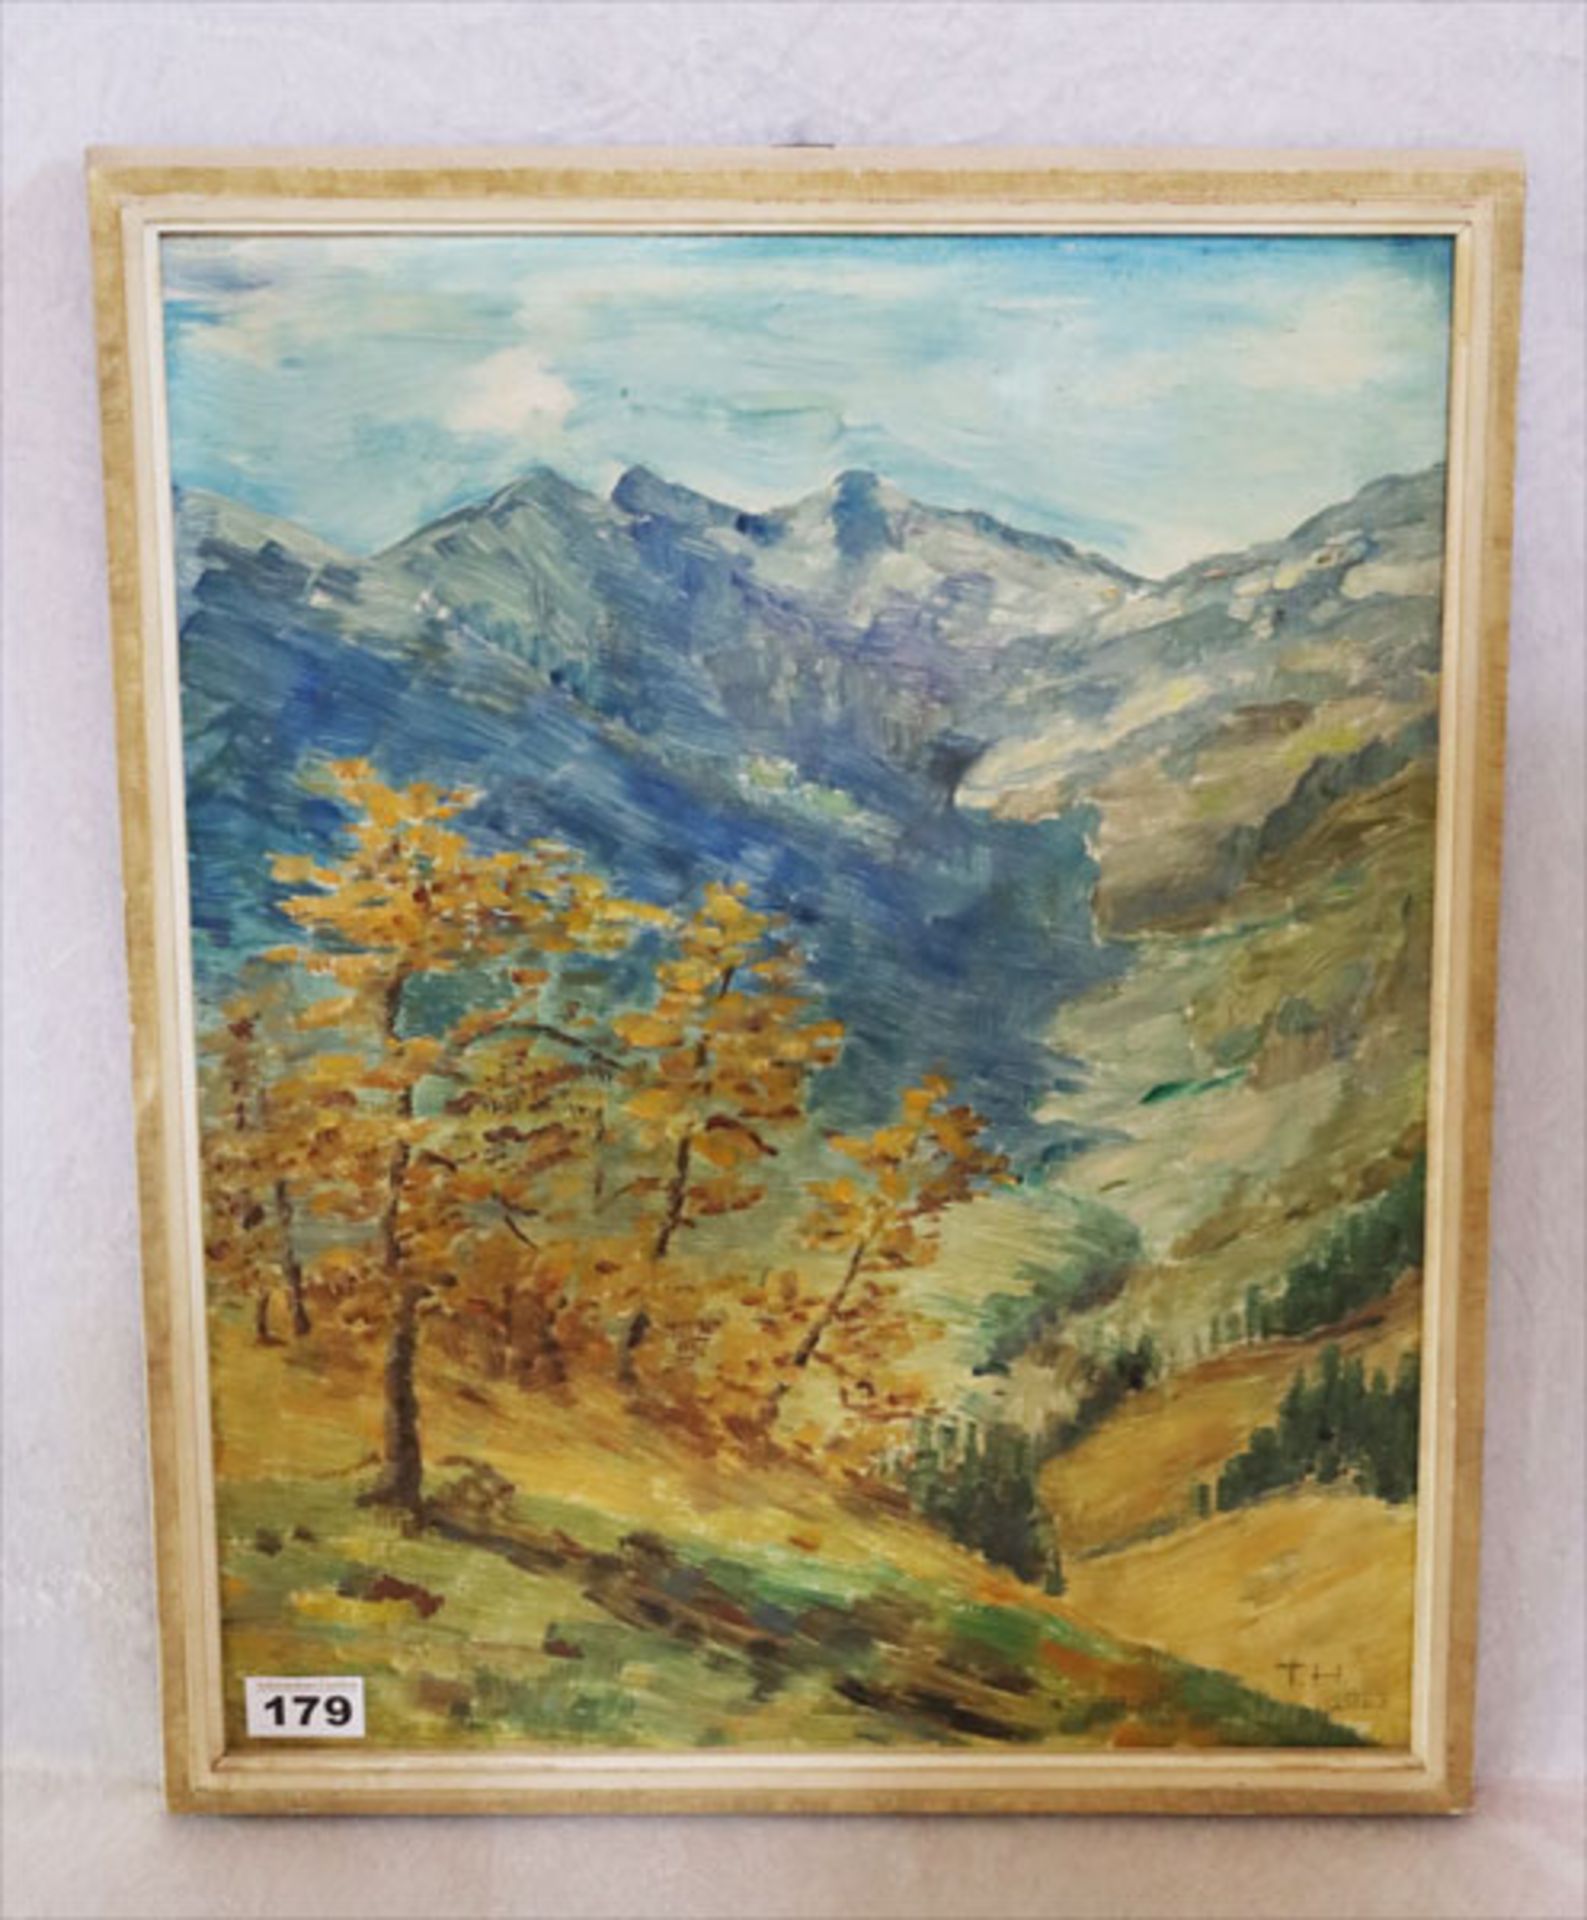 Gemälde ÖL/Hartfaser 'Hochgebirge im Herbst', monogrammiert TH, gerahmt incl. Rahmen 54 cm x 43 cm